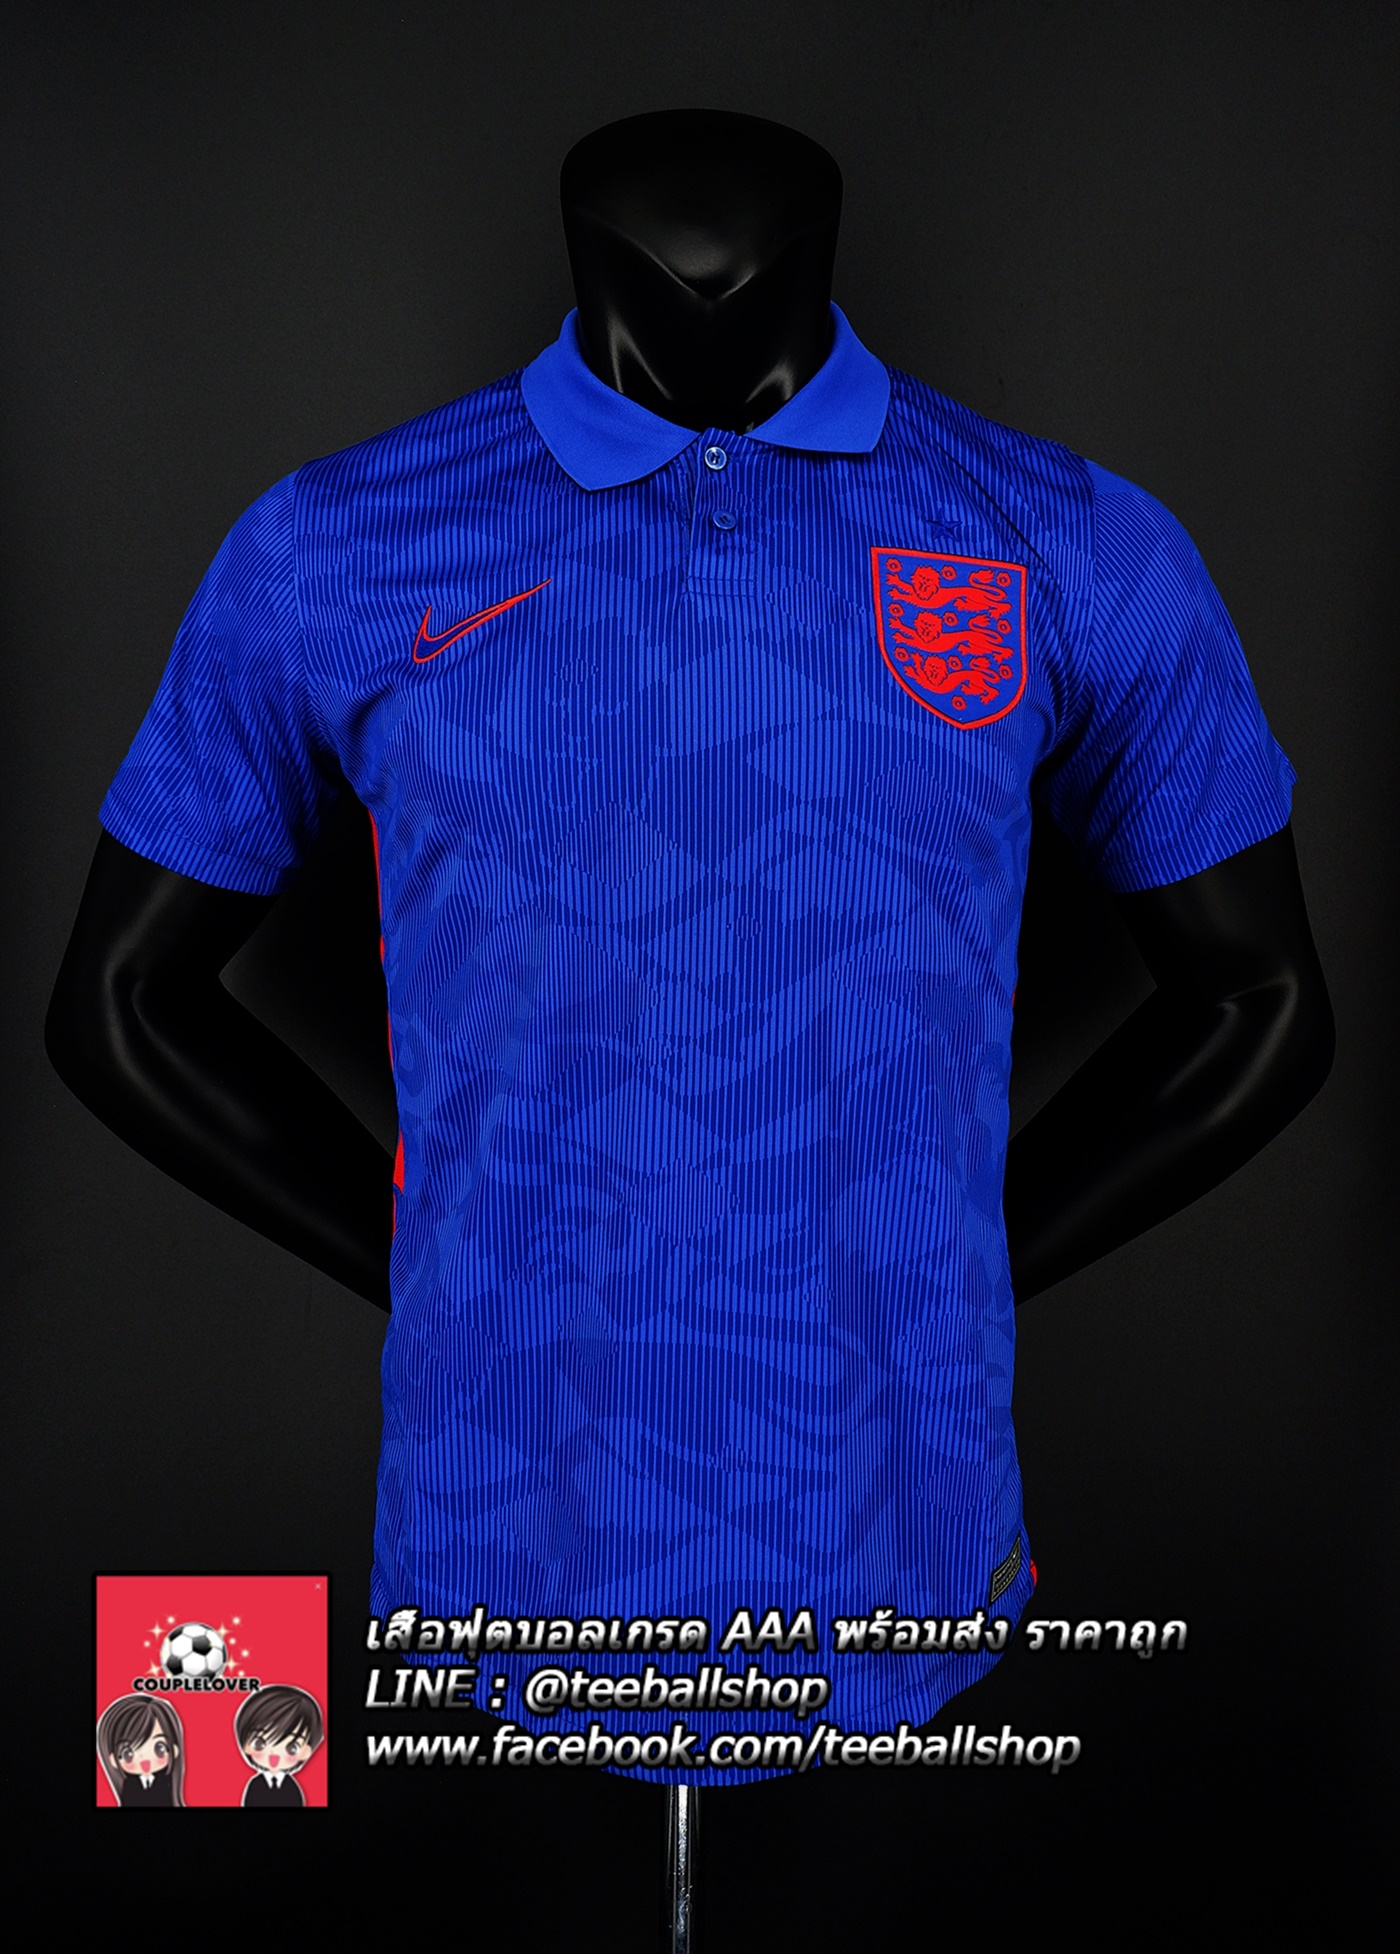 เสื้อฟุตบอลยูโร ทีมชาต อังกฤษชุดเยือนปี 2020/21 England Euro 2020 Away  (ภาพถ่ายจากของจริง) Top Thai Quality football soccer jerseys shirts AAA